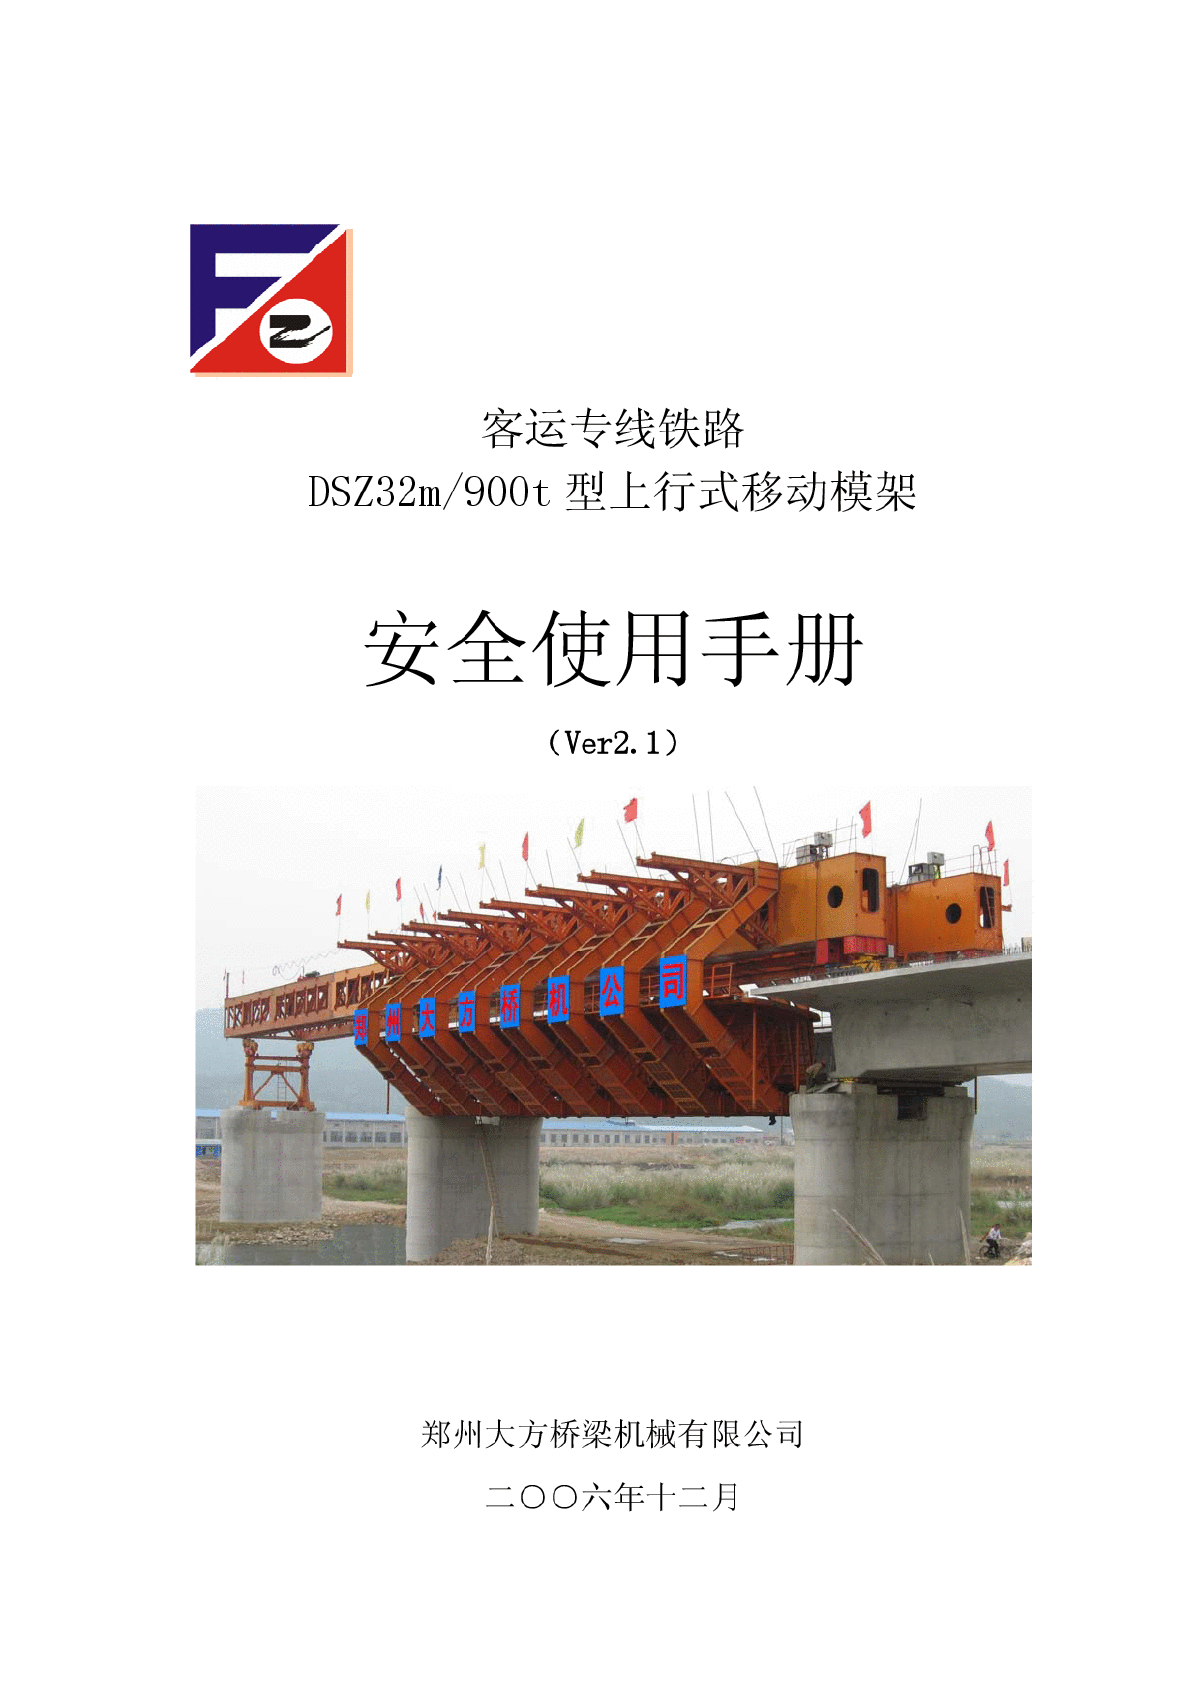 客运专线铁路DSZ32m/900t型上行式移动模架安全使用手册 -图一